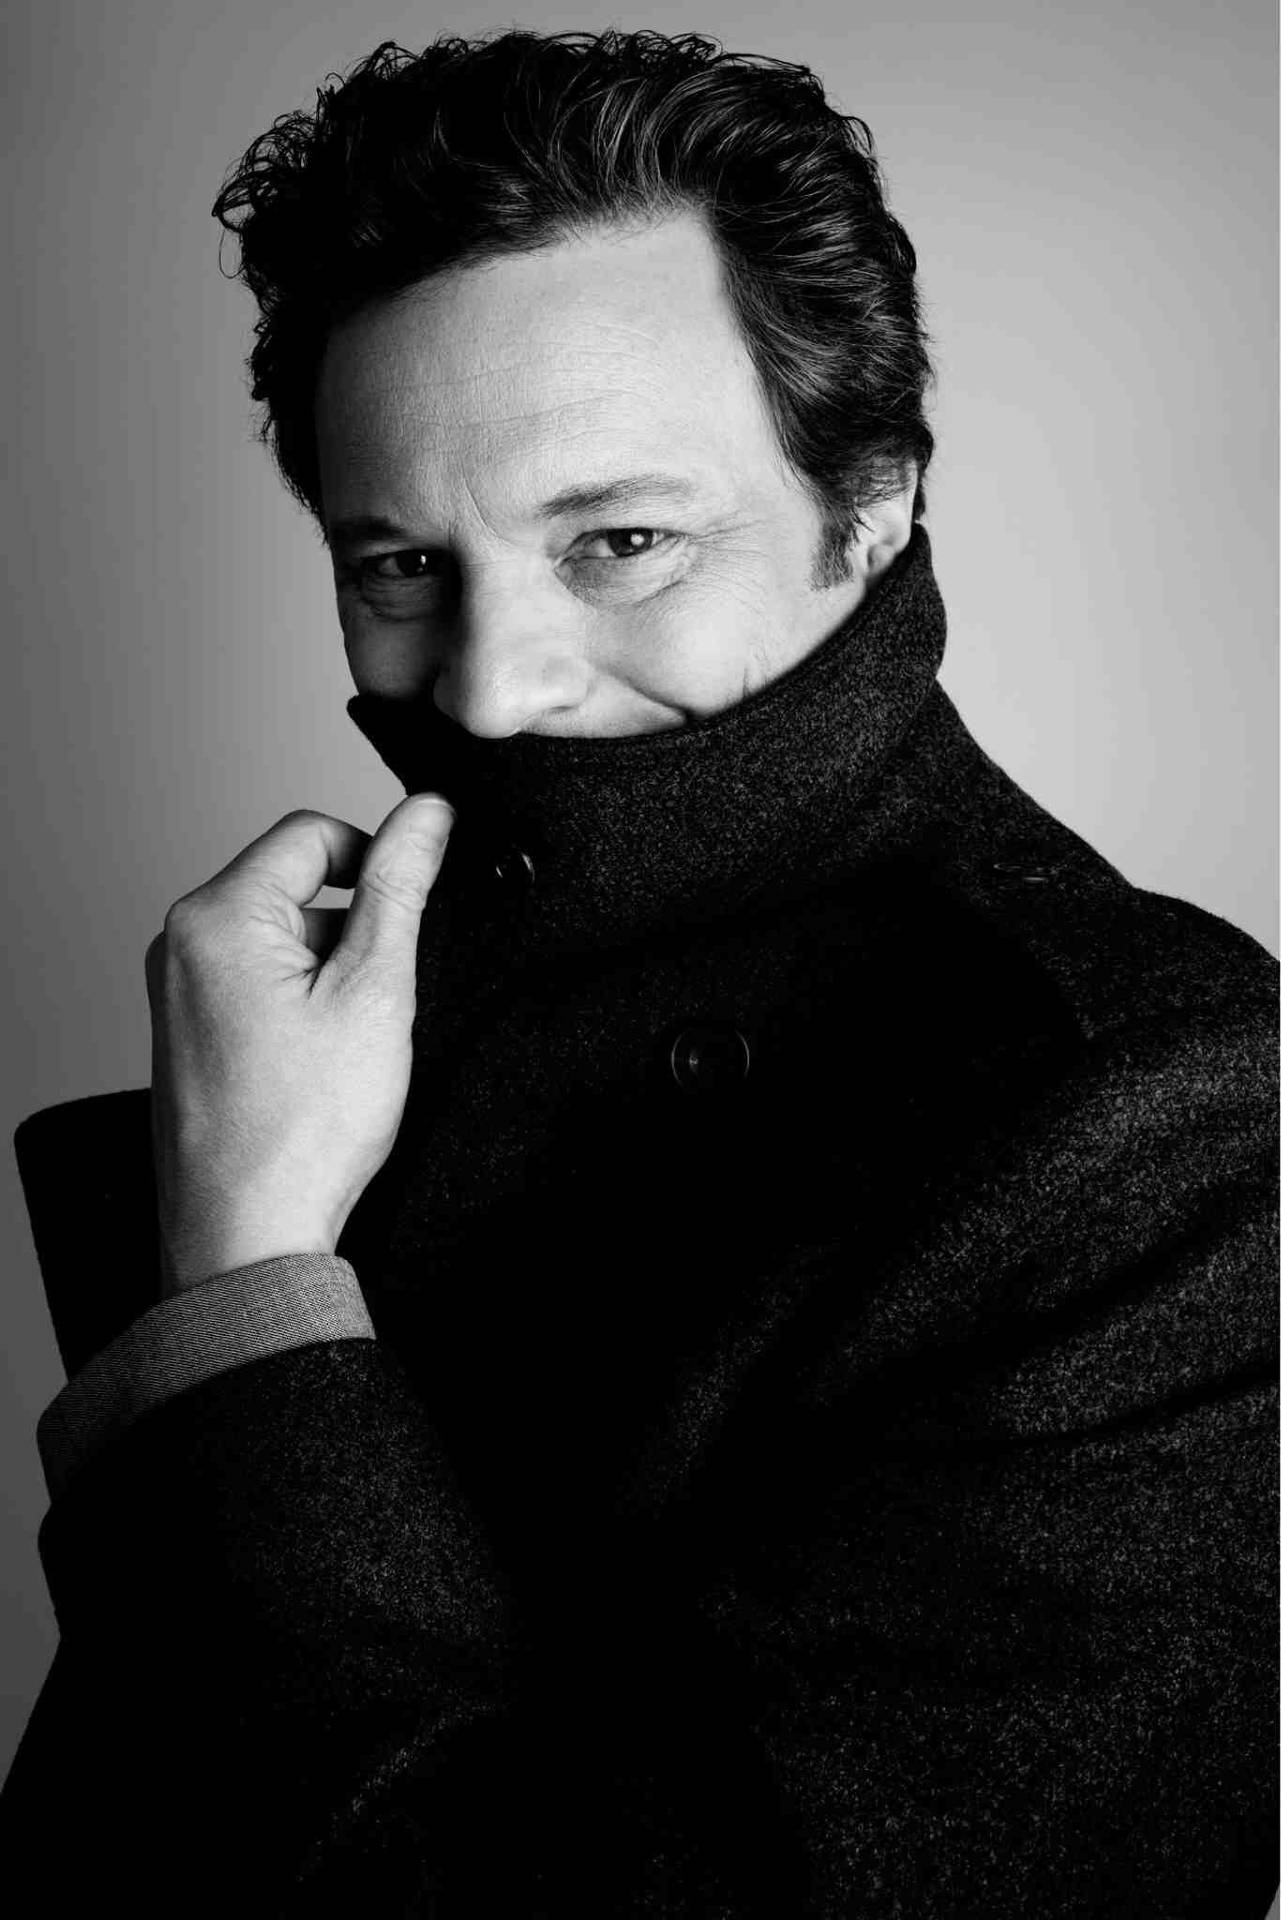 Engelskaskådespelaren Colin Firth För British Vogue. Wallpaper